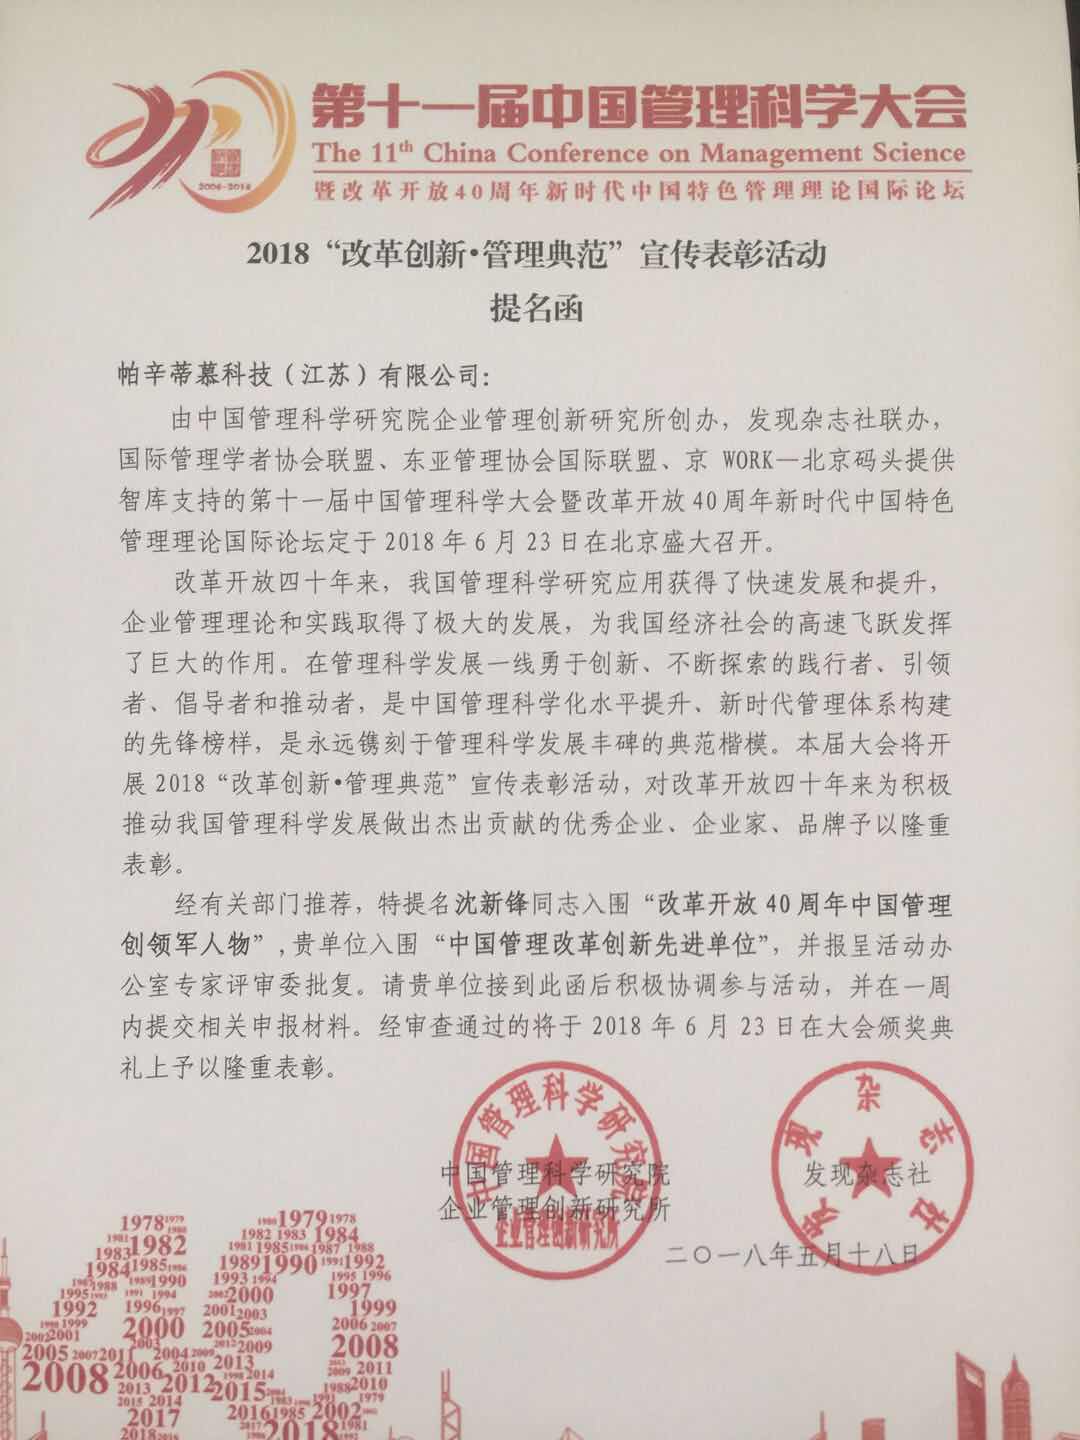 帕辛蒂慕科技（江蘇）有限公司榮獲中國管理科學研究院提名